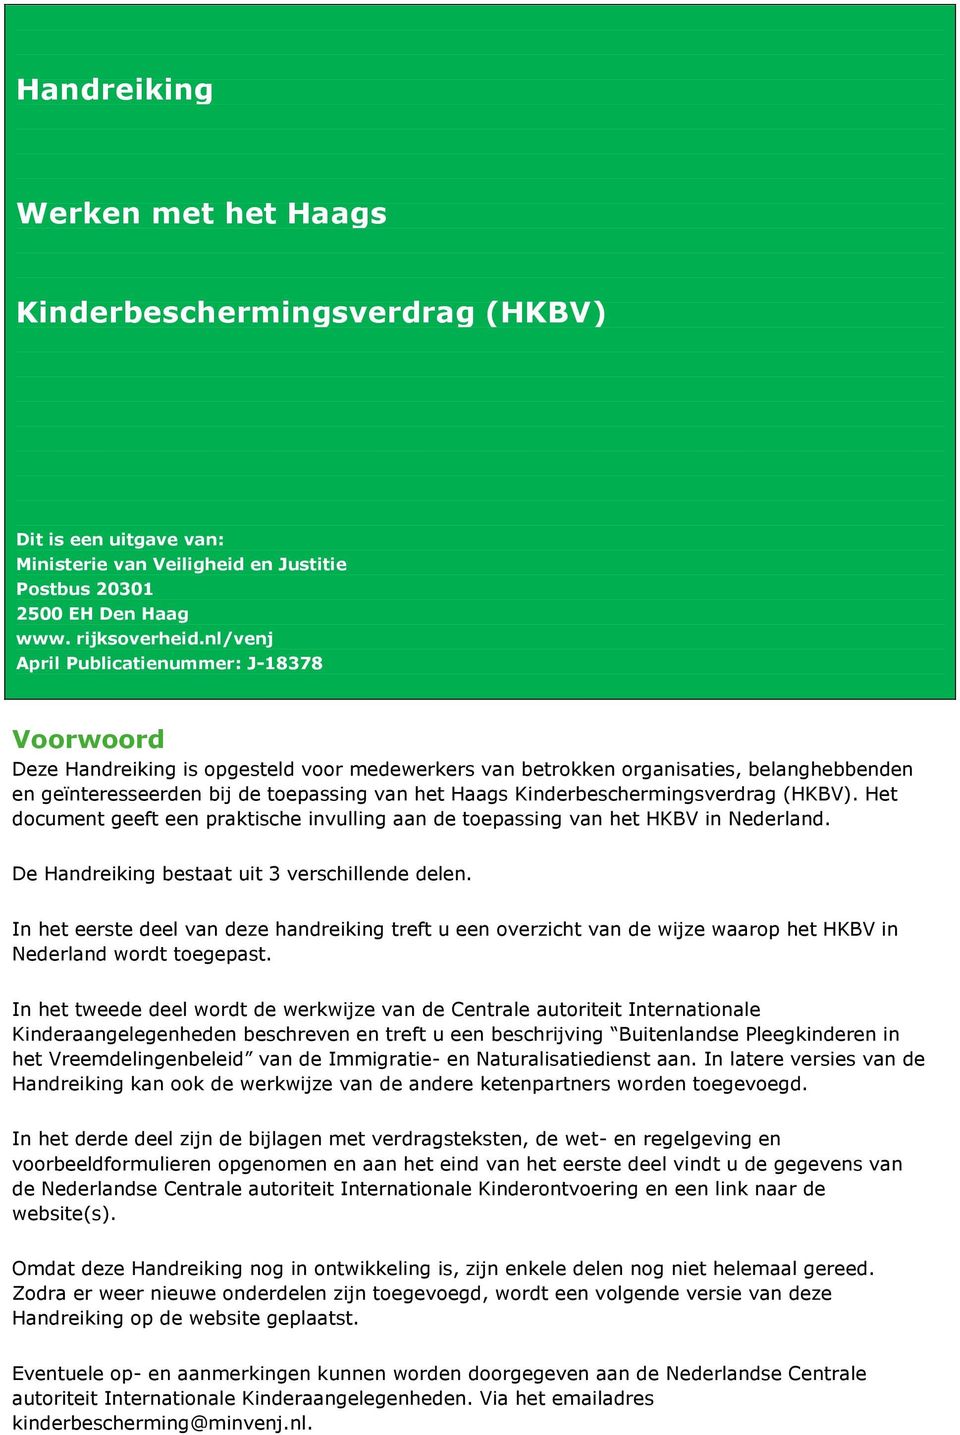 Kinderbeschermingsverdrag (HKBV). Het document geeft een praktische invulling aan de toepassing van het HKBV in Nederland. De Handreiking bestaat uit 3 verschillende delen.